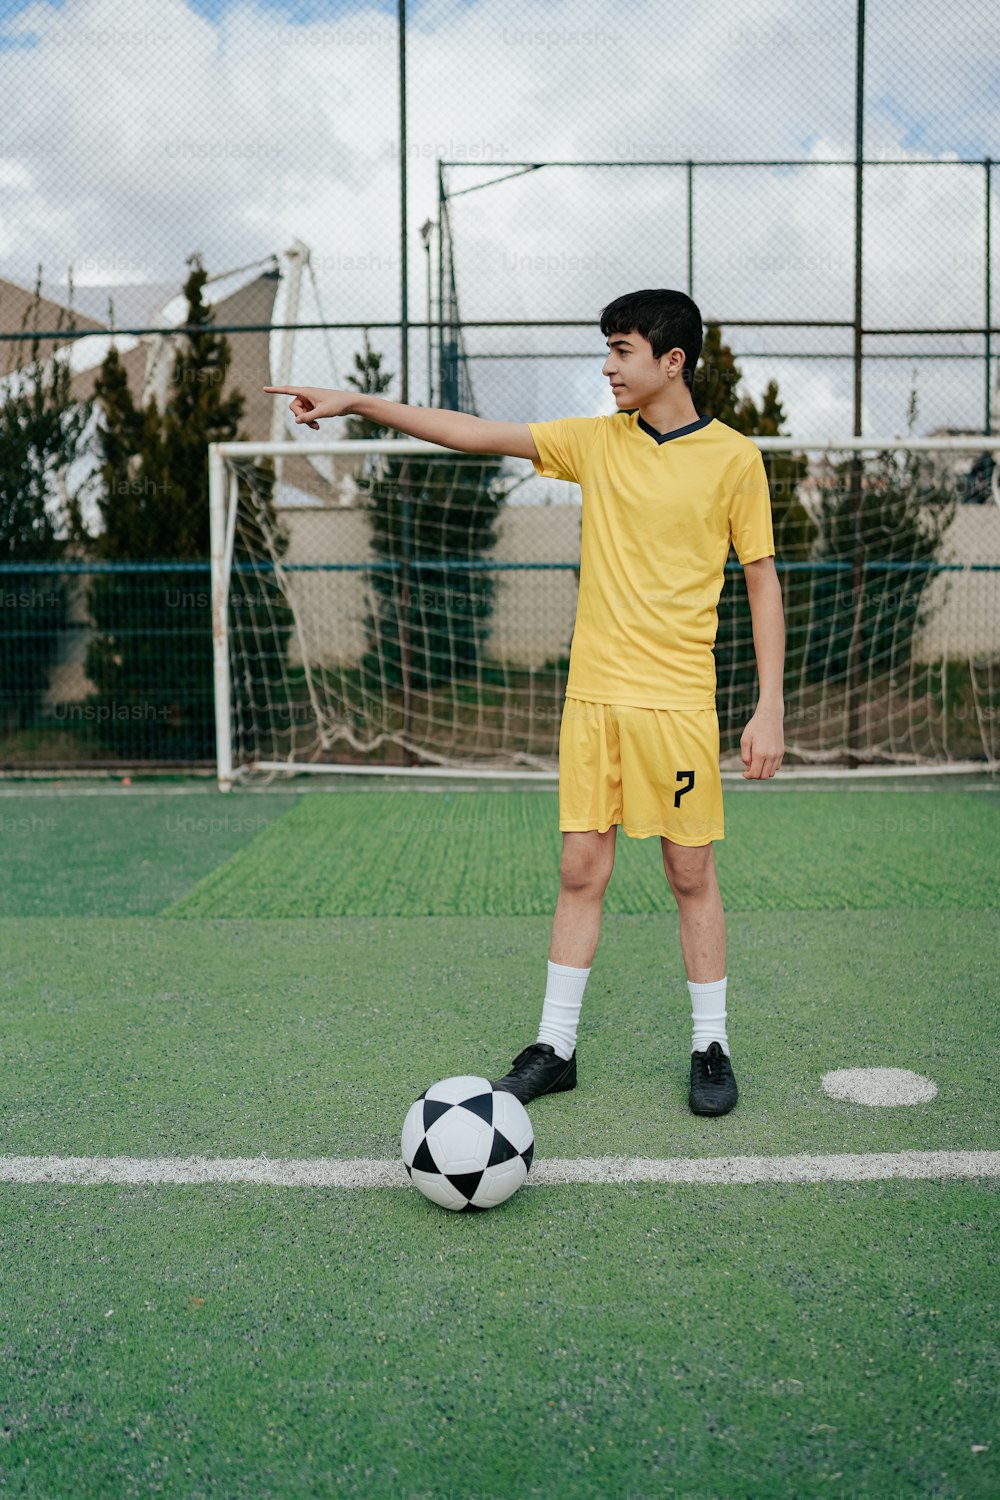 Un jeune homme en uniforme jaune donnant un coup de pied dans un ballon de soccer